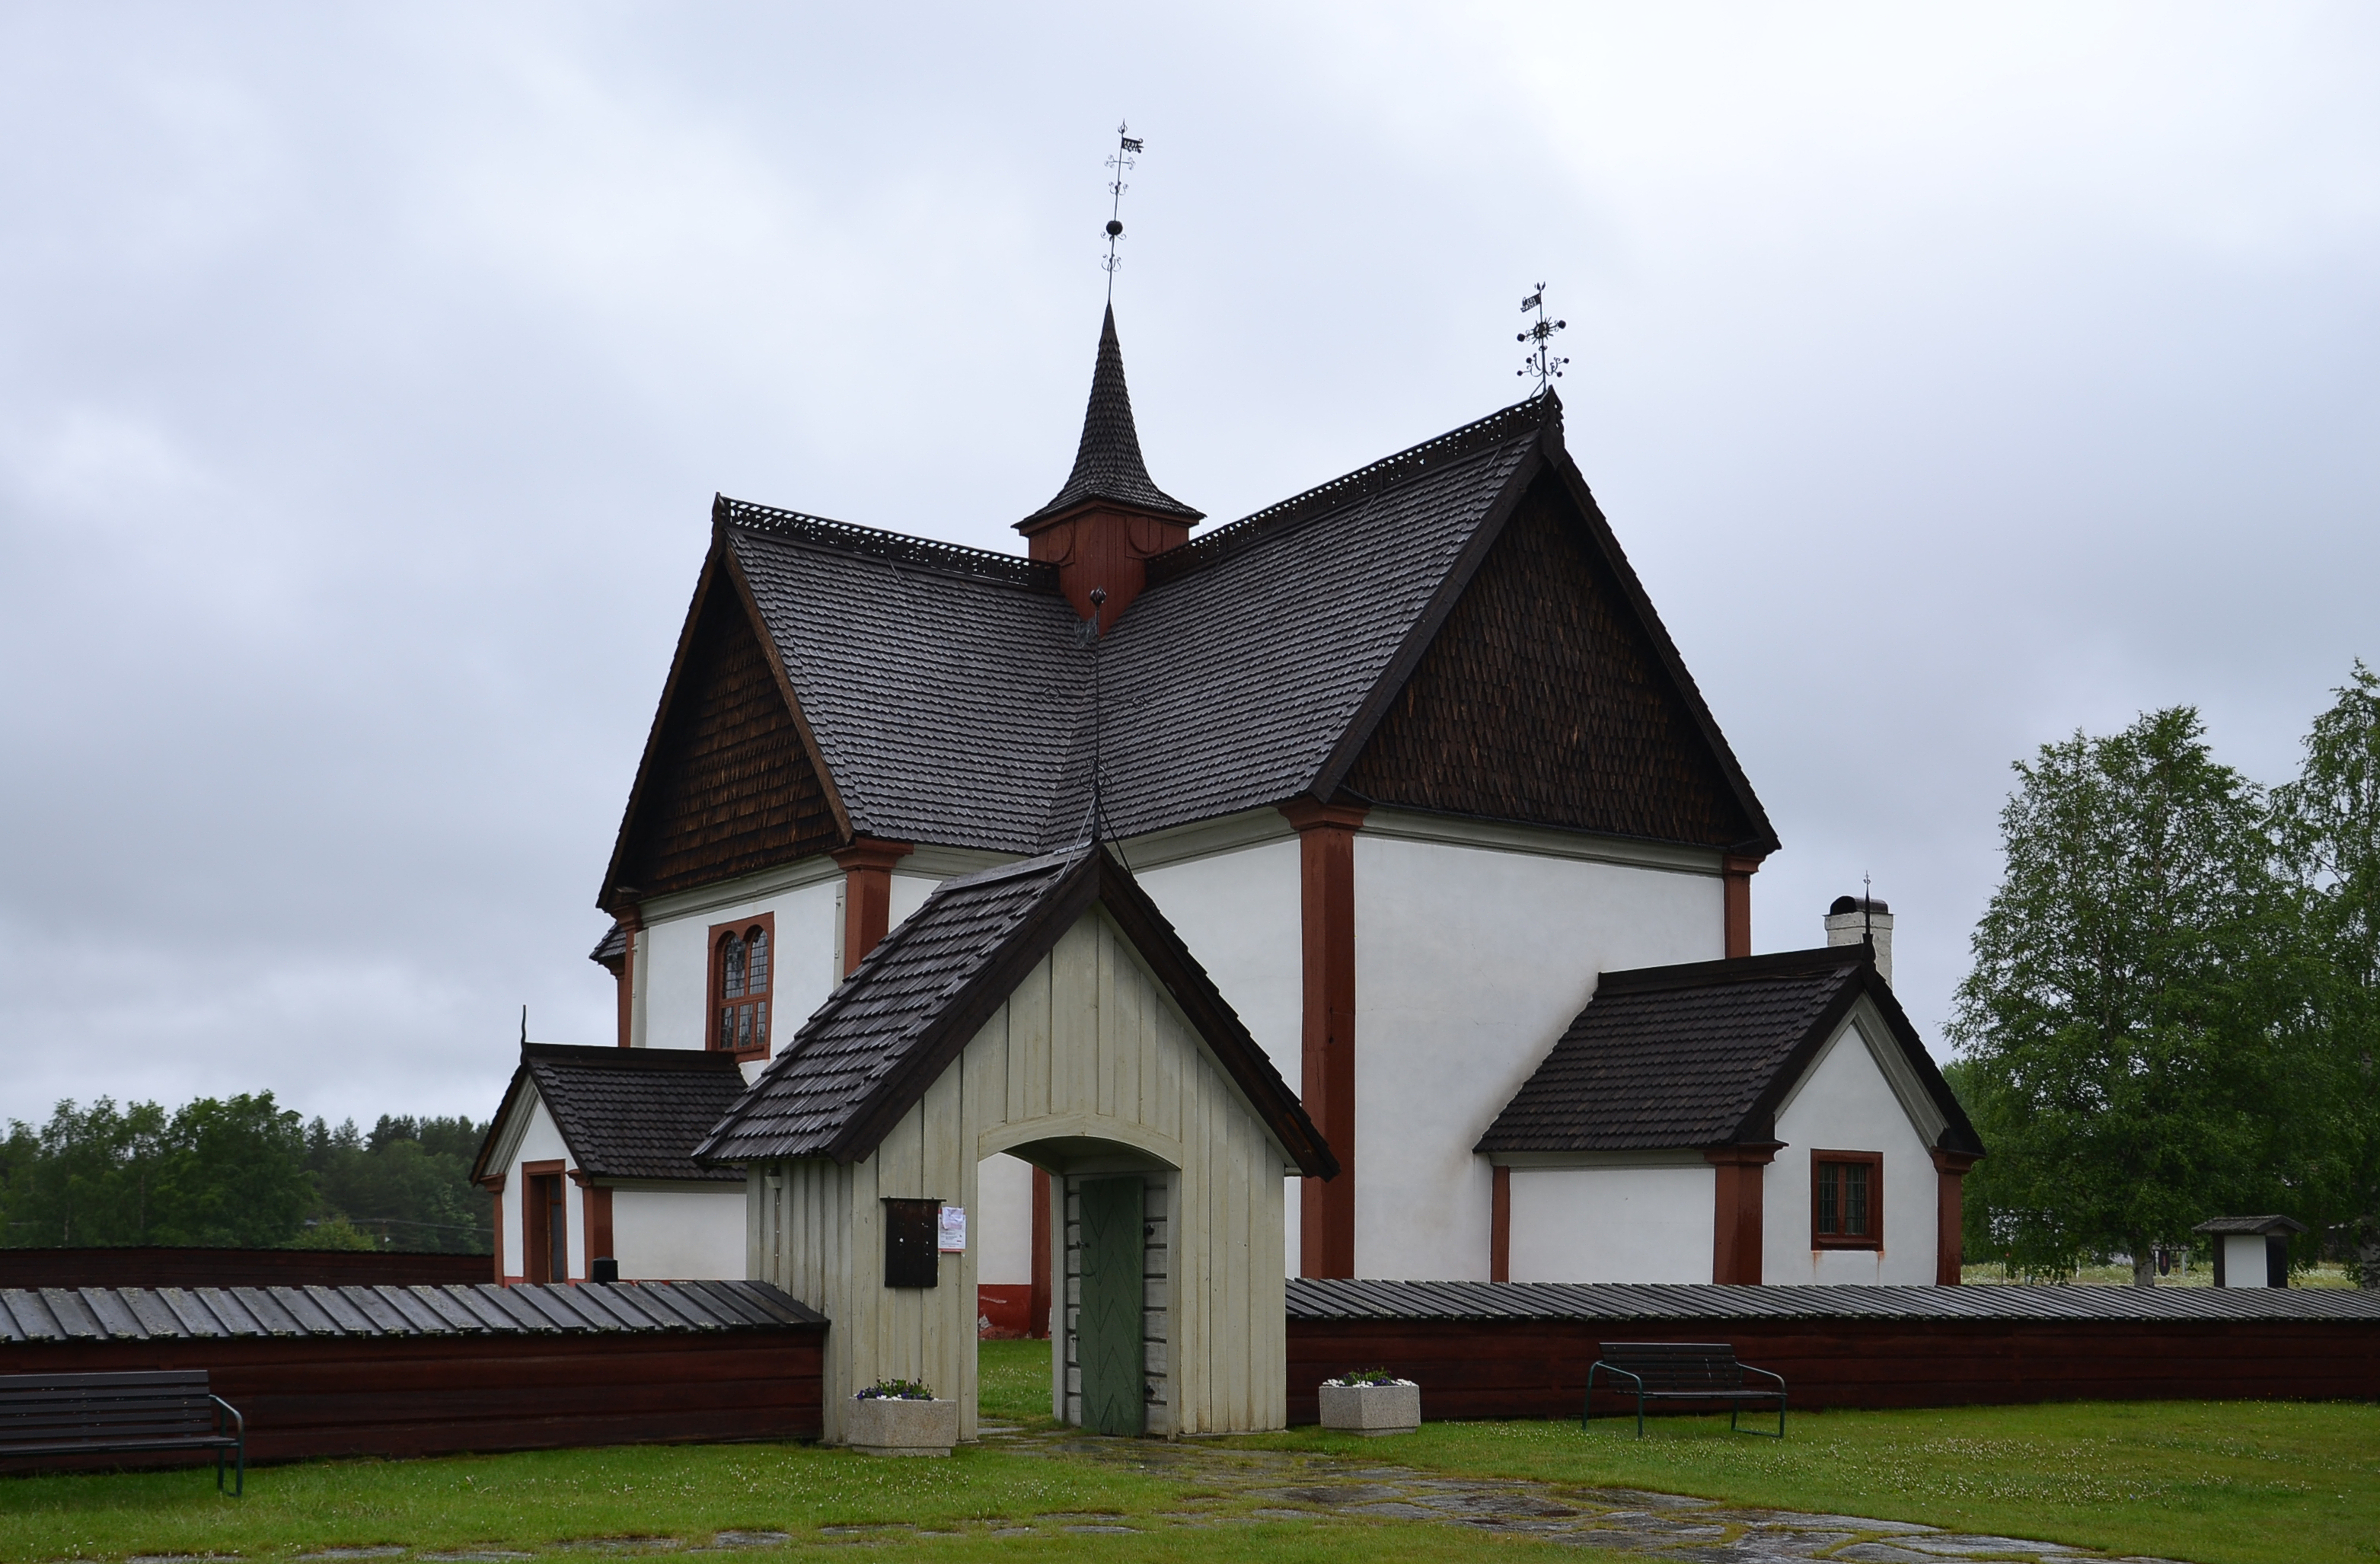 Älvros old church